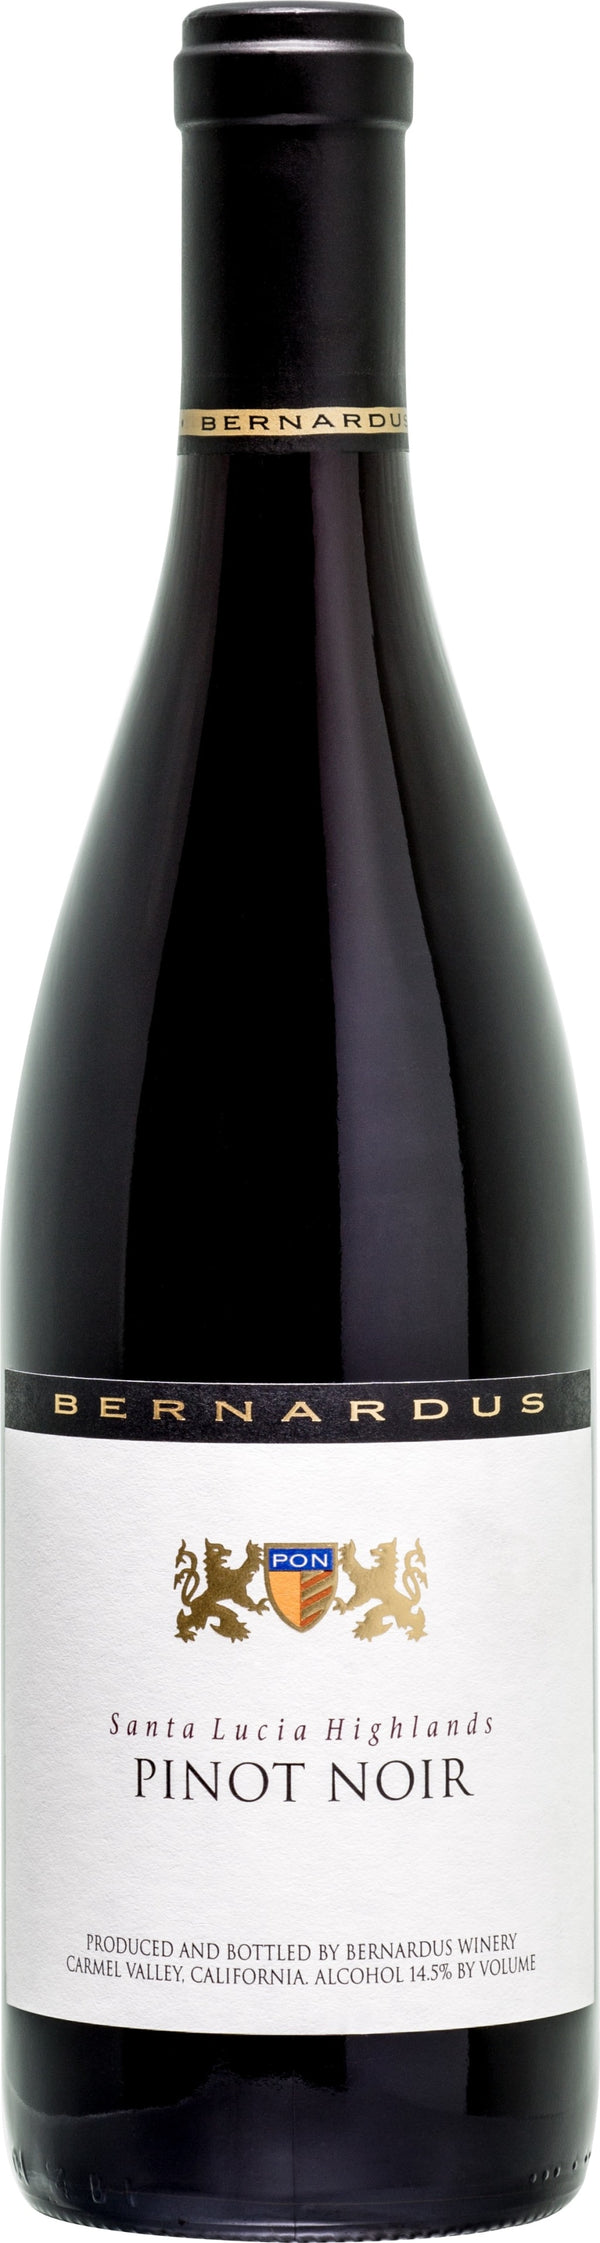 Bernardus Pinot Noir, Santa Lucia Highlands